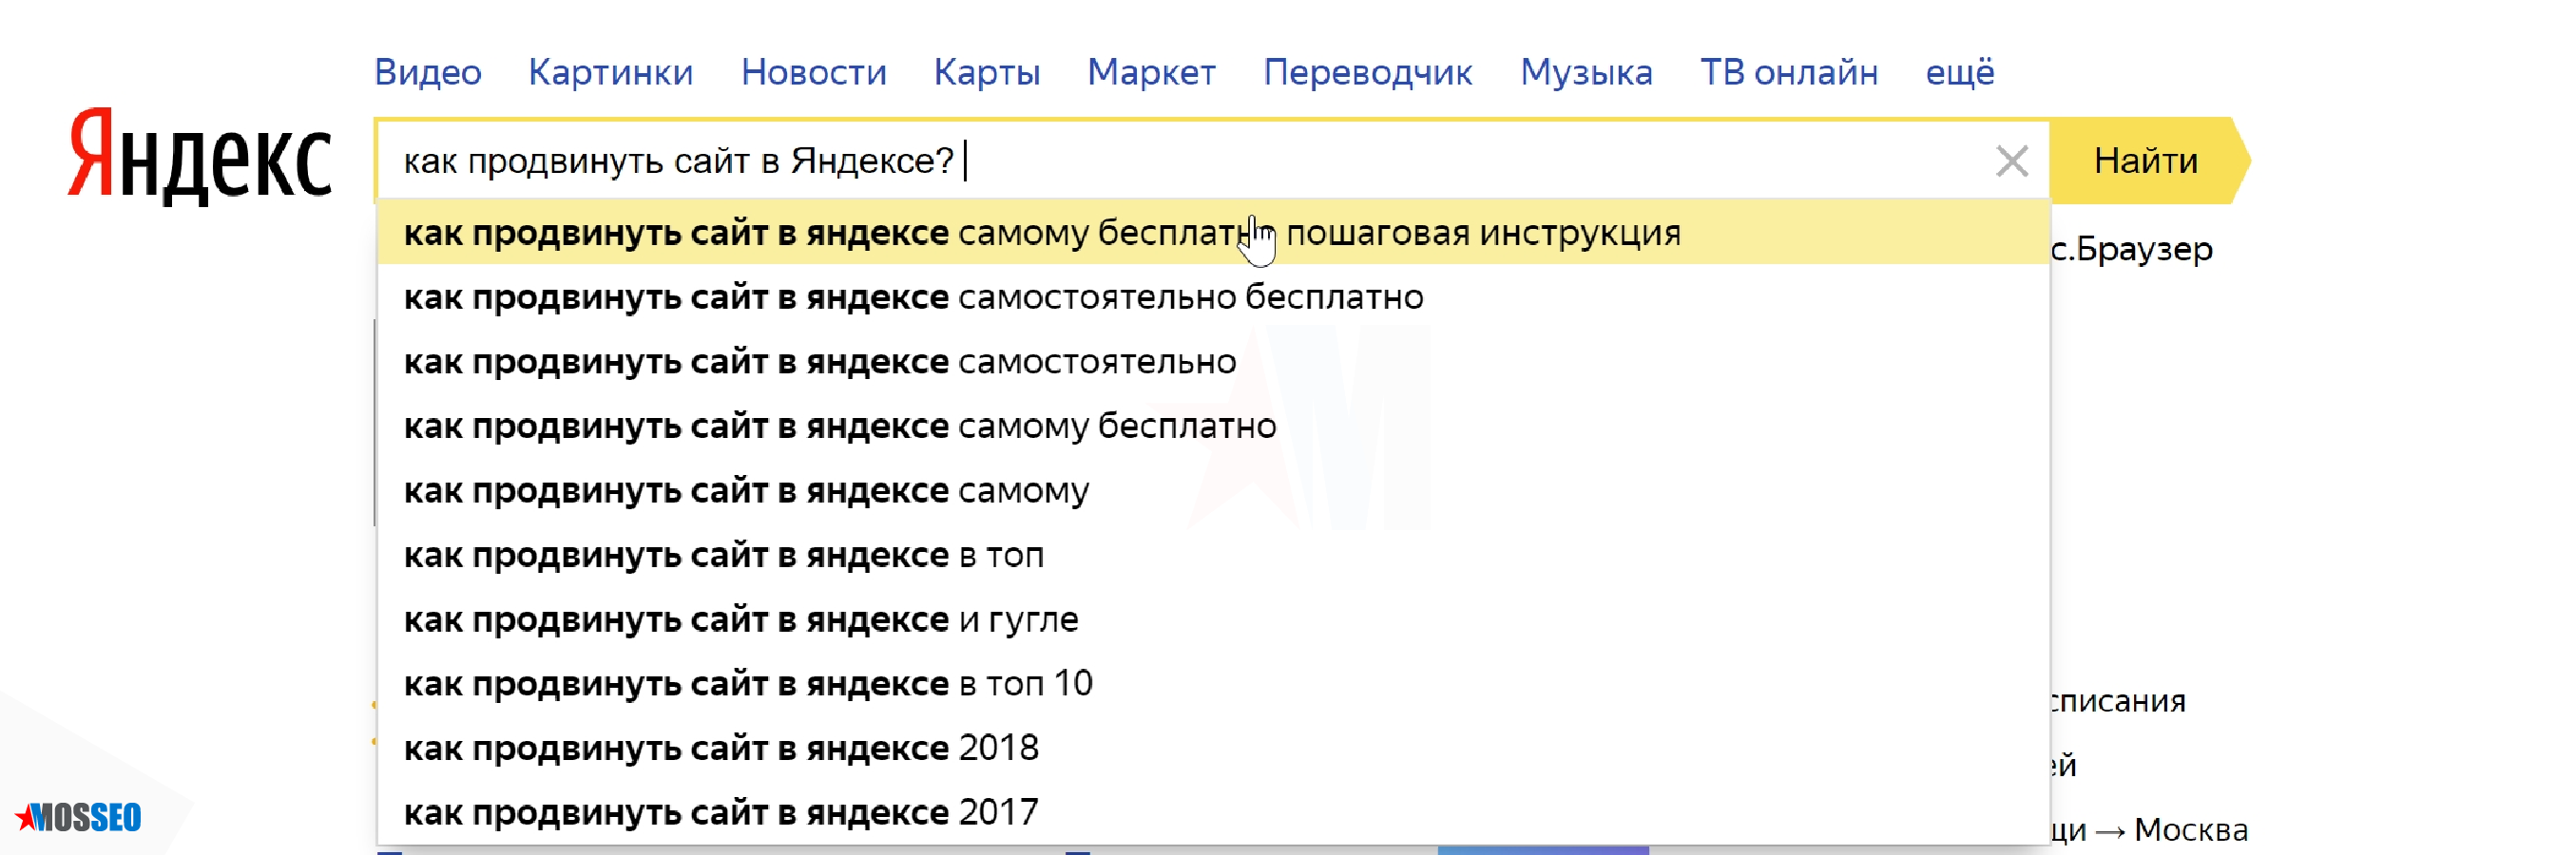 Особенности SEO (СЕО) продвижения и раскрутки сайта в Яндексе